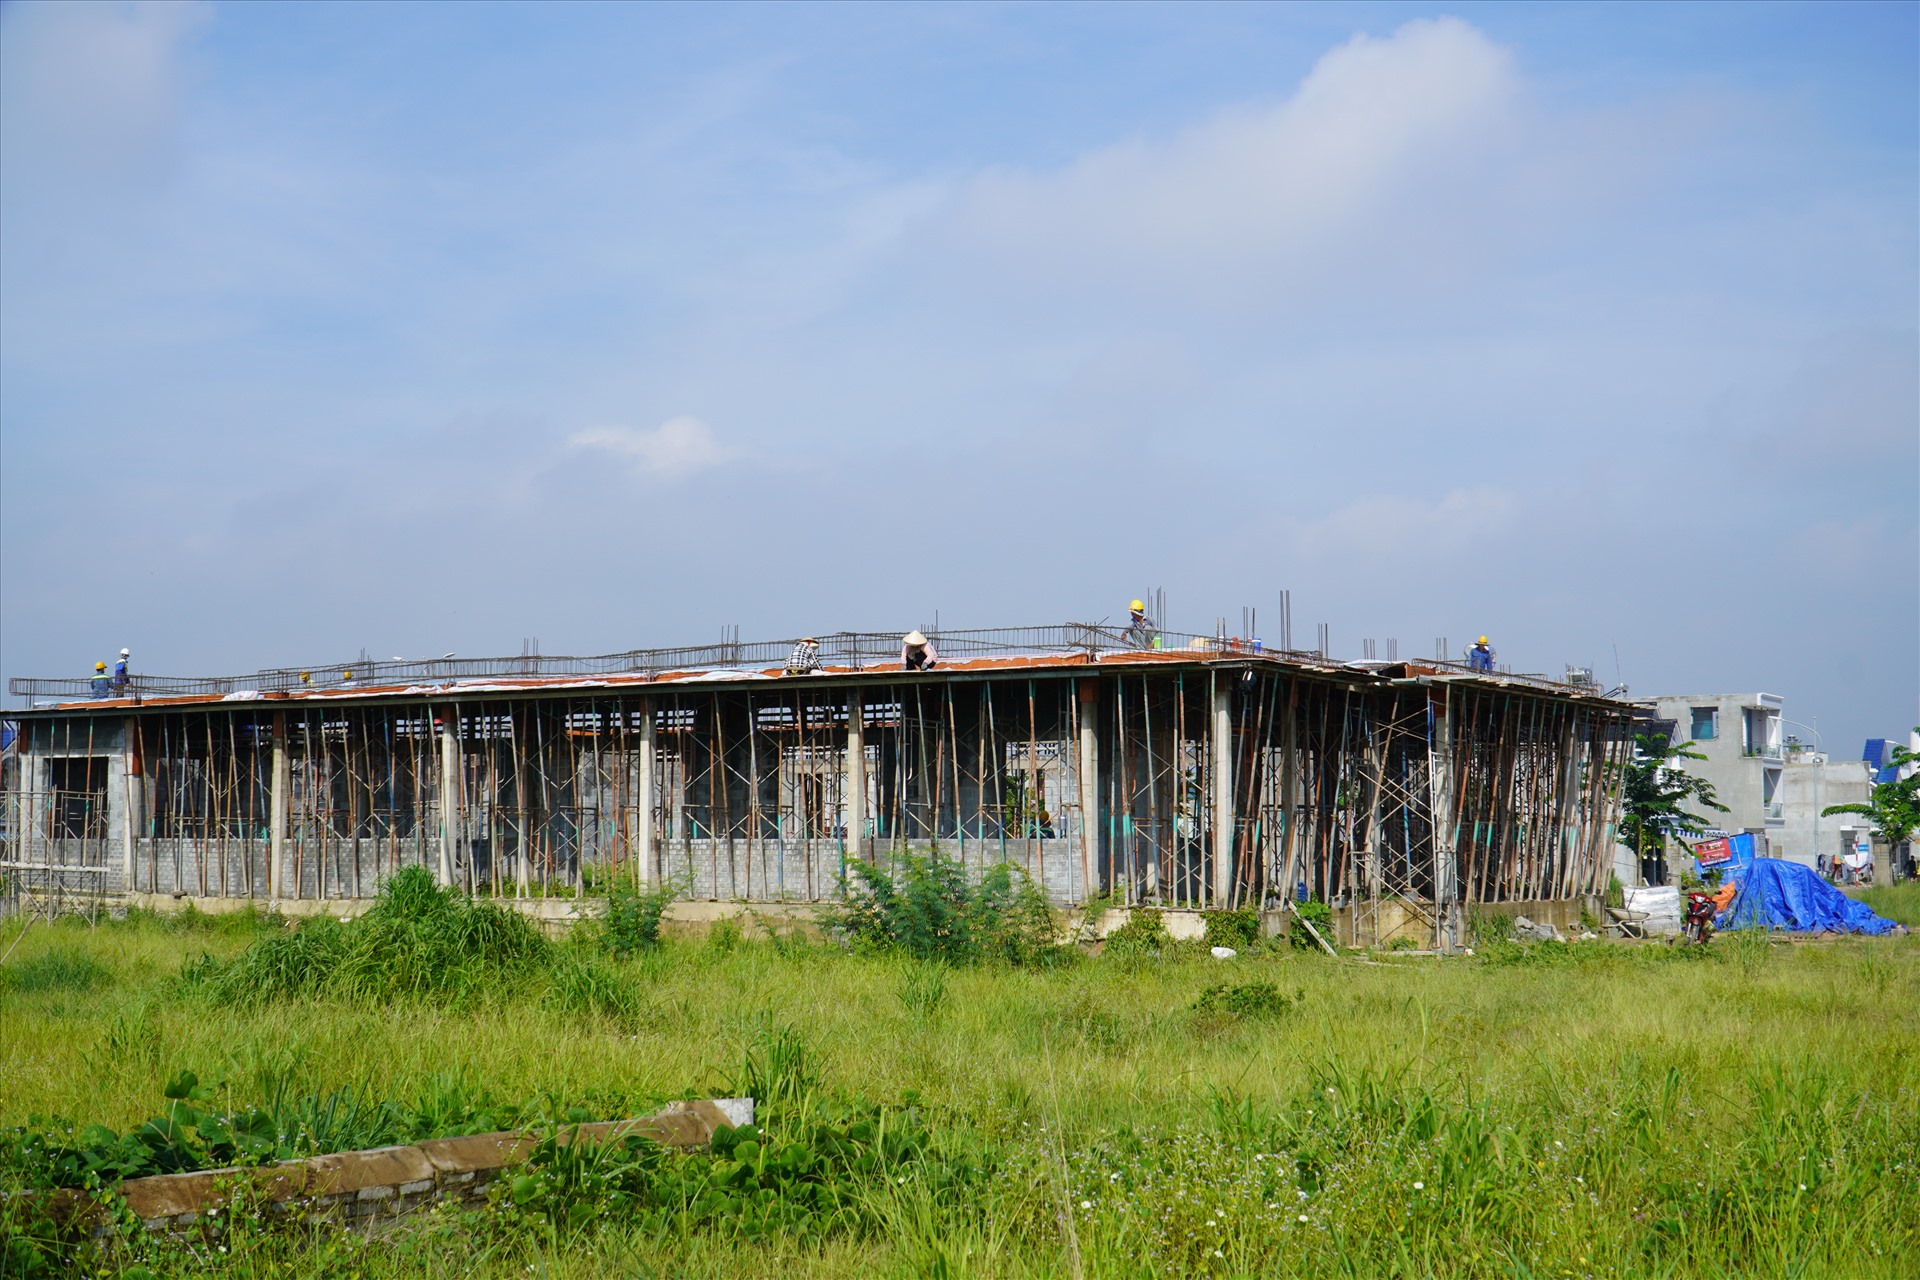 Khảo sát khu tái định cư Lộc An - Bình Sơn nơi di dời người dân vùng dự án sân bay Long Thành tới định cư. Ảnh: Hà Anh Chiến